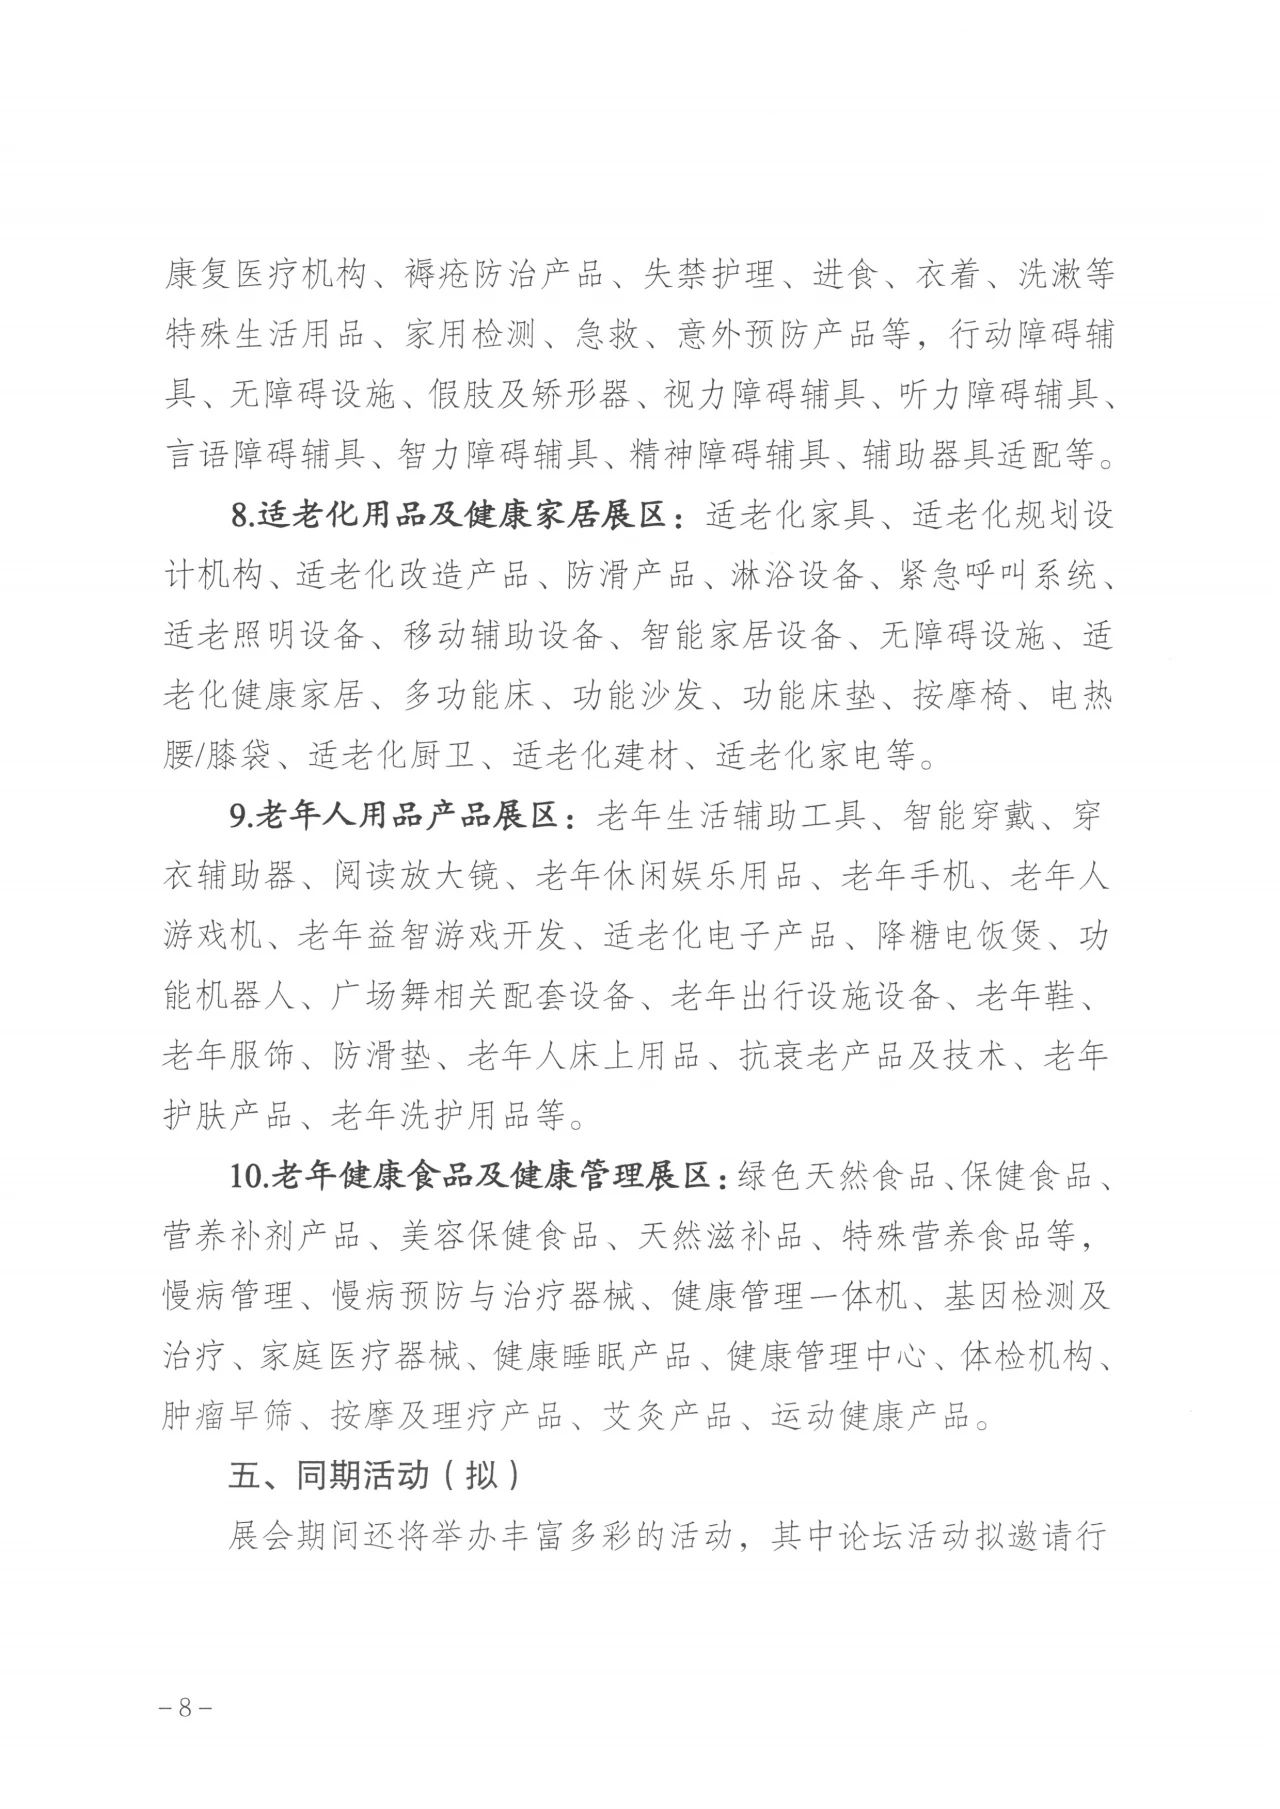 通知  广州市民政局关于邀请组织参加第八届广州老博会的函8.jpg